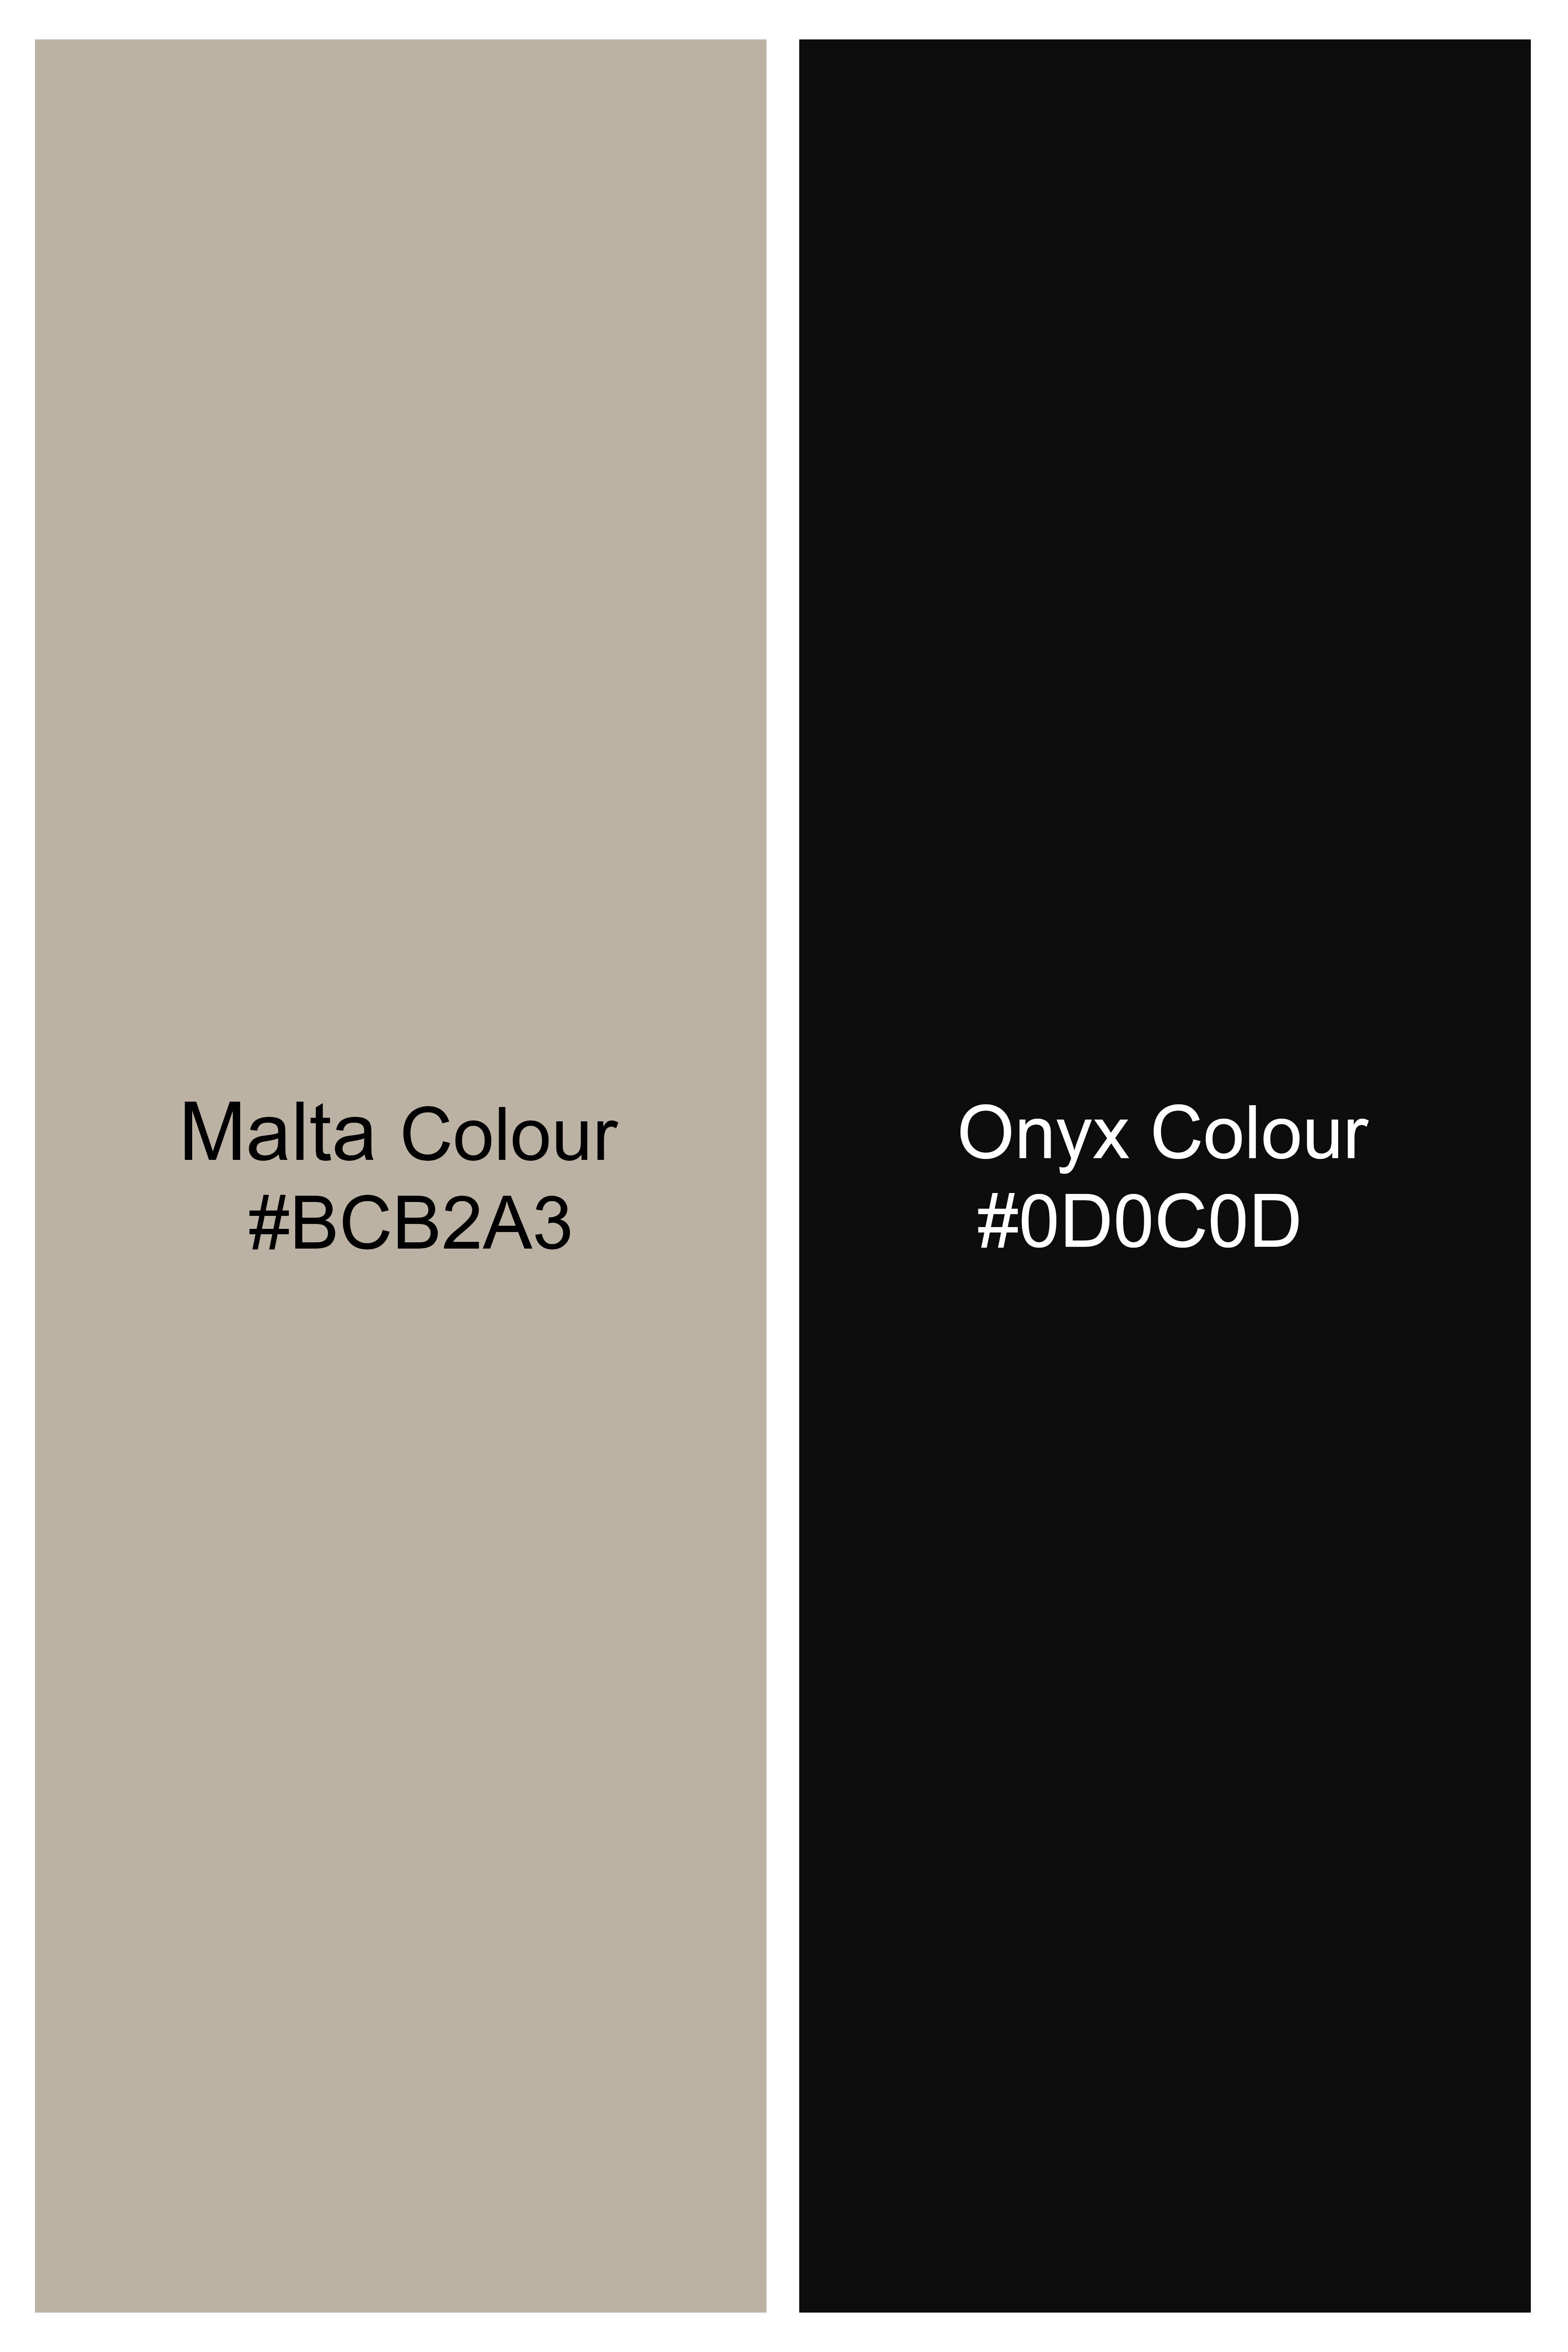 Malta Brown and Onyx Black Tribal Printed Subtle Sheen Super Soft Premium Cotton Shirt 11667-M-BLK-38, 11667-M-BLK-H-38, 11667-M-BLK-39, 11667-M-BLK-H-39, 11667-M-BLK-40, 11667-M-BLK-H-40, 11667-M-BLK-42, 11667-M-BLK-H-42, 11667-M-BLK-44, 11667-M-BLK-H-44, 11667-M-BLK-46, 11667-M-BLK-H-46, 11667-M-BLK-48, 11667-M-BLK-H-48, 11667-M-BLK-50, 11667-M-BLK-H-50, 11667-M-BLK-52, 11667-M-BLK-H-52